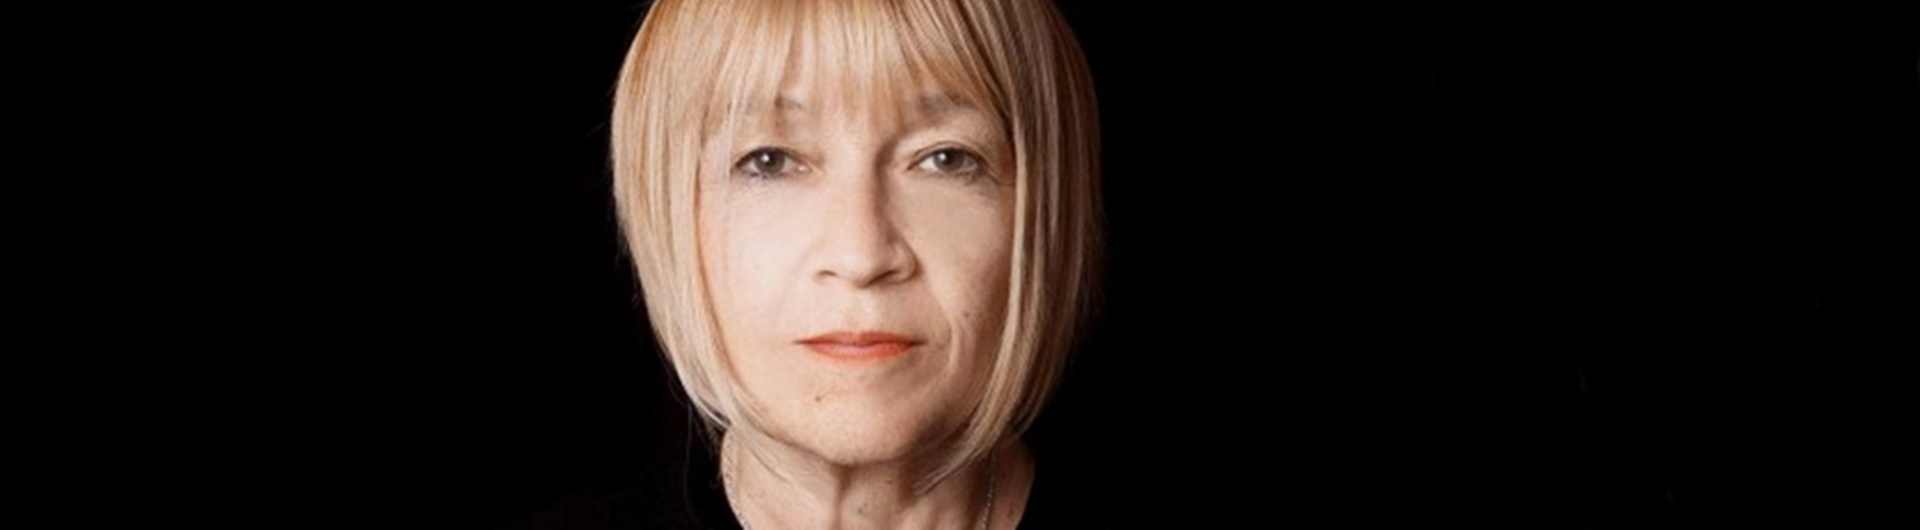 Cindy Gallop – specjalistka od rozp...  szklanego sufitu w reklamie